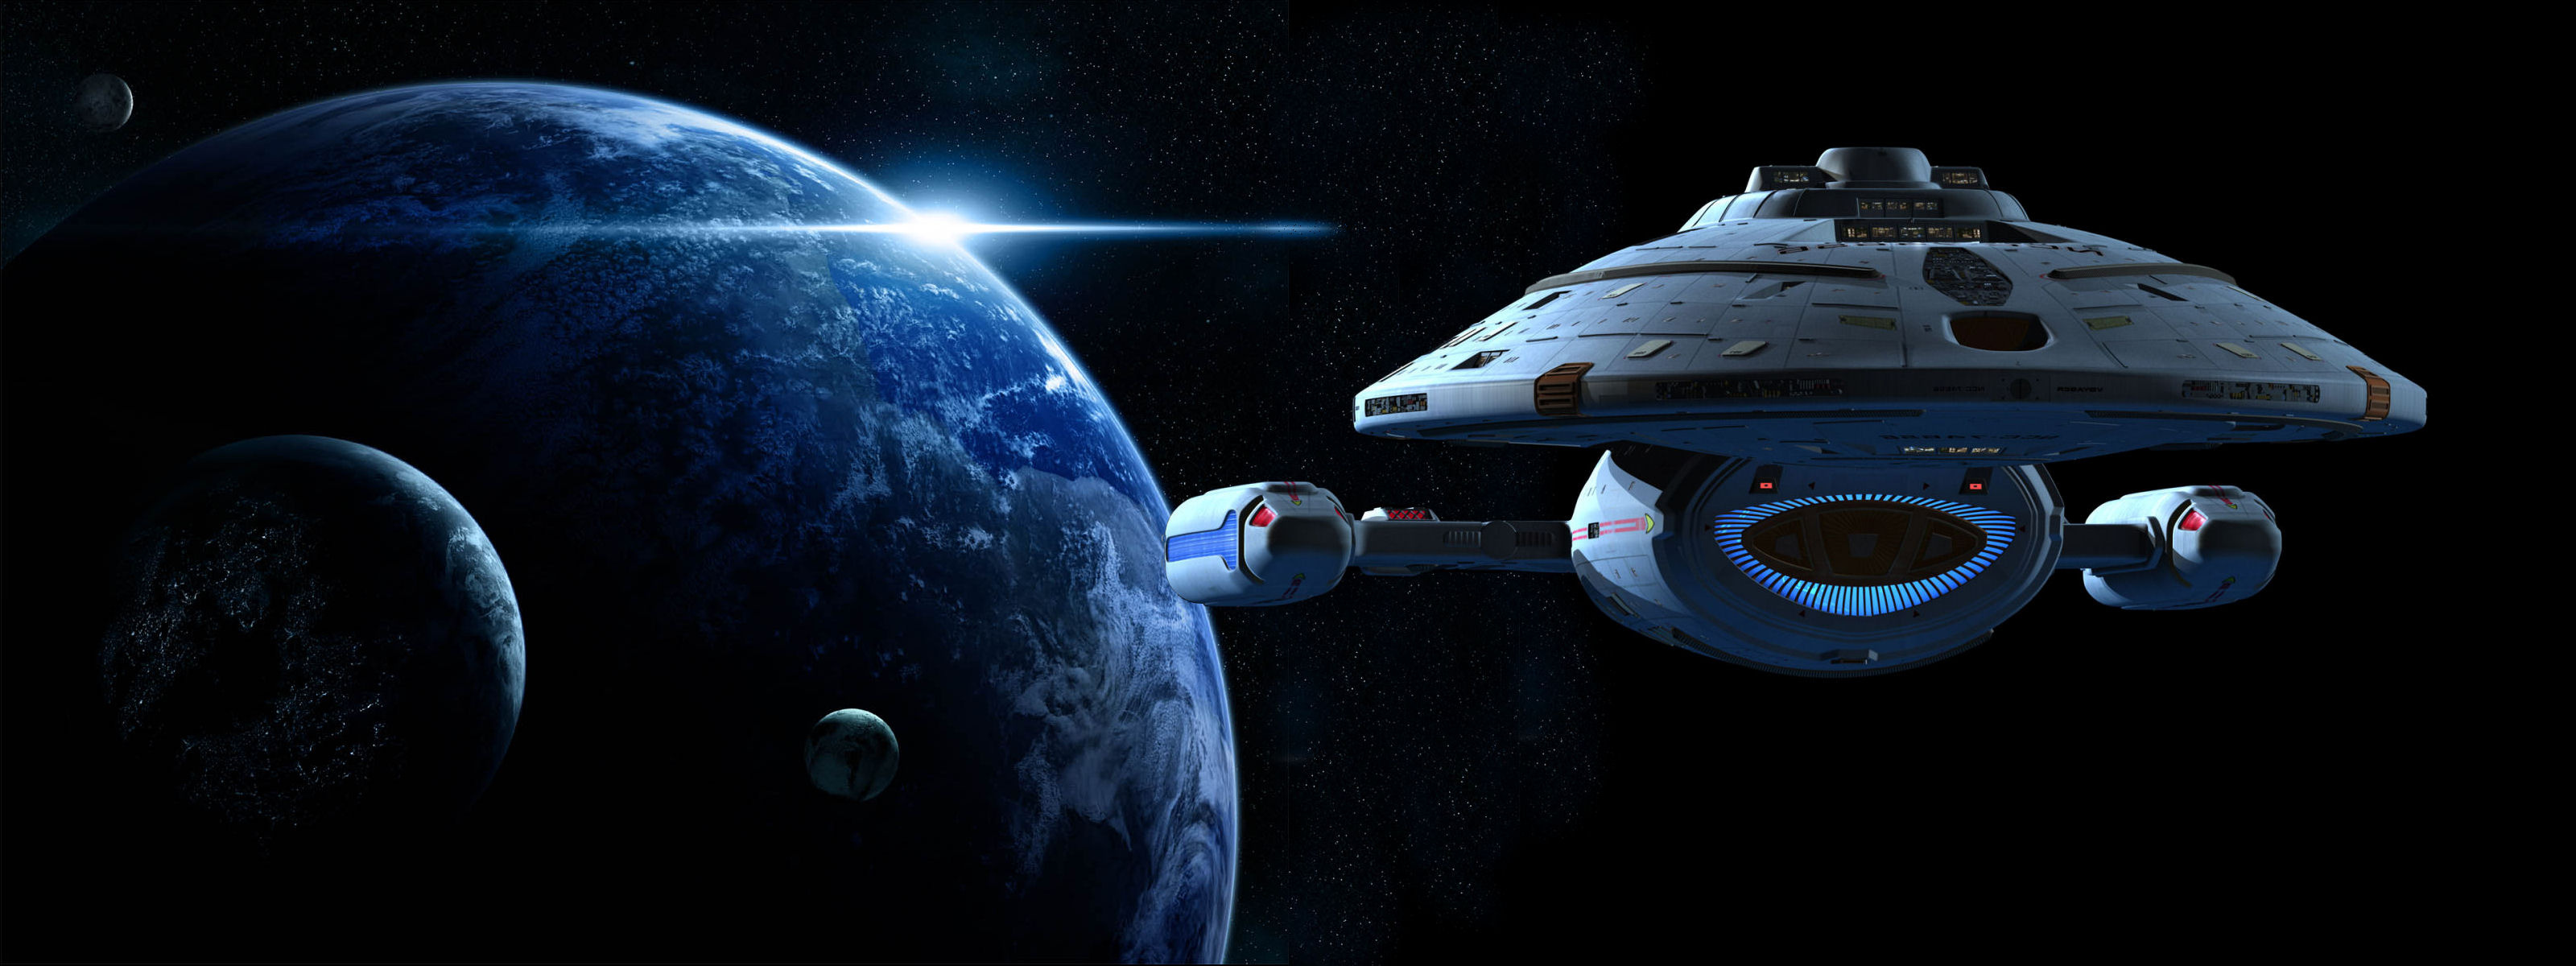 Star Trek universe, Sci-fi adventure, Space exploration, Futuristic vessels, 3200x1200 Dual Screen Desktop